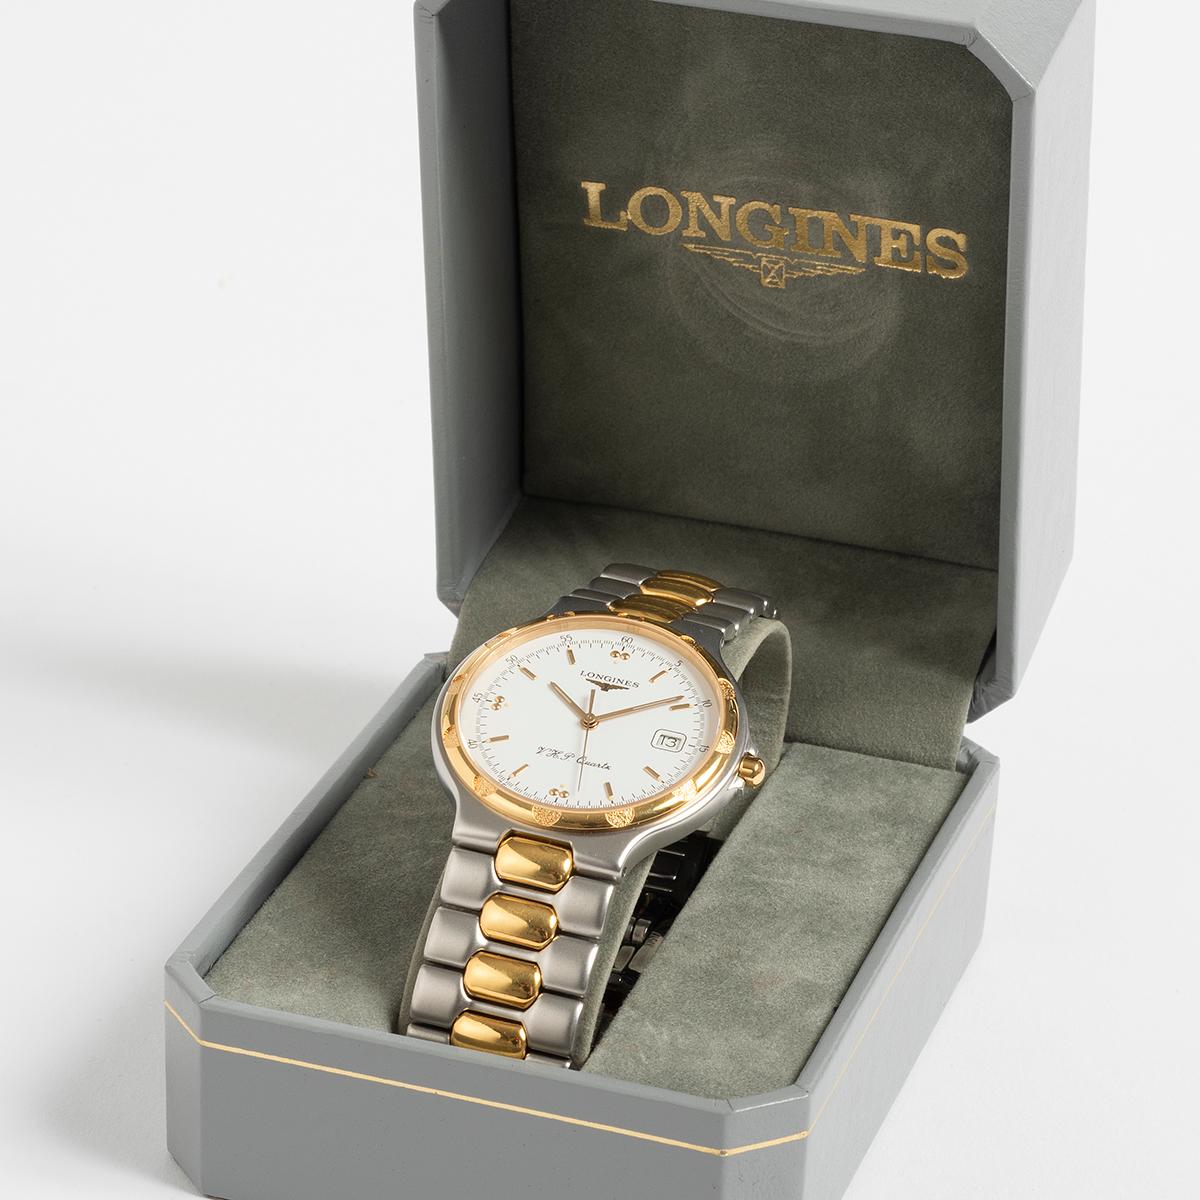 Unsere Longines Conquest VHP im Neo-Vintage-Stil hat ein 35-mm-Gehäuse aus Edelstahl und ein vergoldetes Armband. Bemerkenswert ist, dass diese Referenz 21601-01 als eines der herausragenden Modelle der Longines-Reihe in dieser Zeit galt, wobei VHP